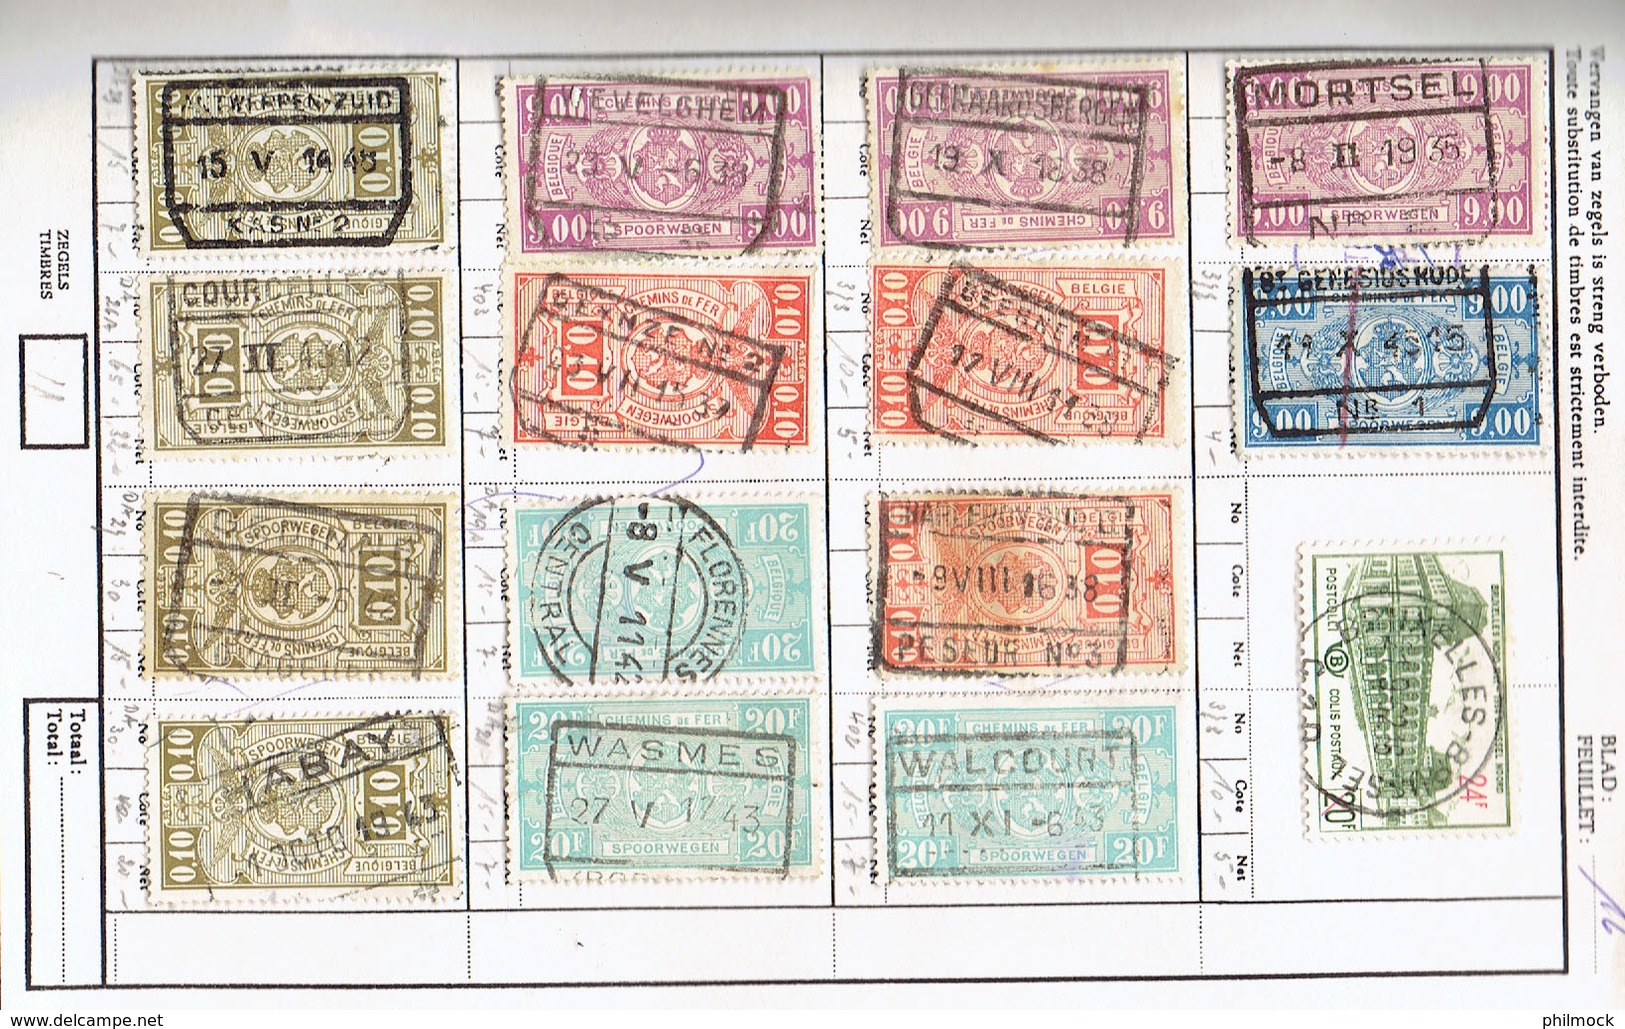 2 carnets d'échanges timbres CF avec belles oblitérations - envoi non normalisé gratuit en Belgique